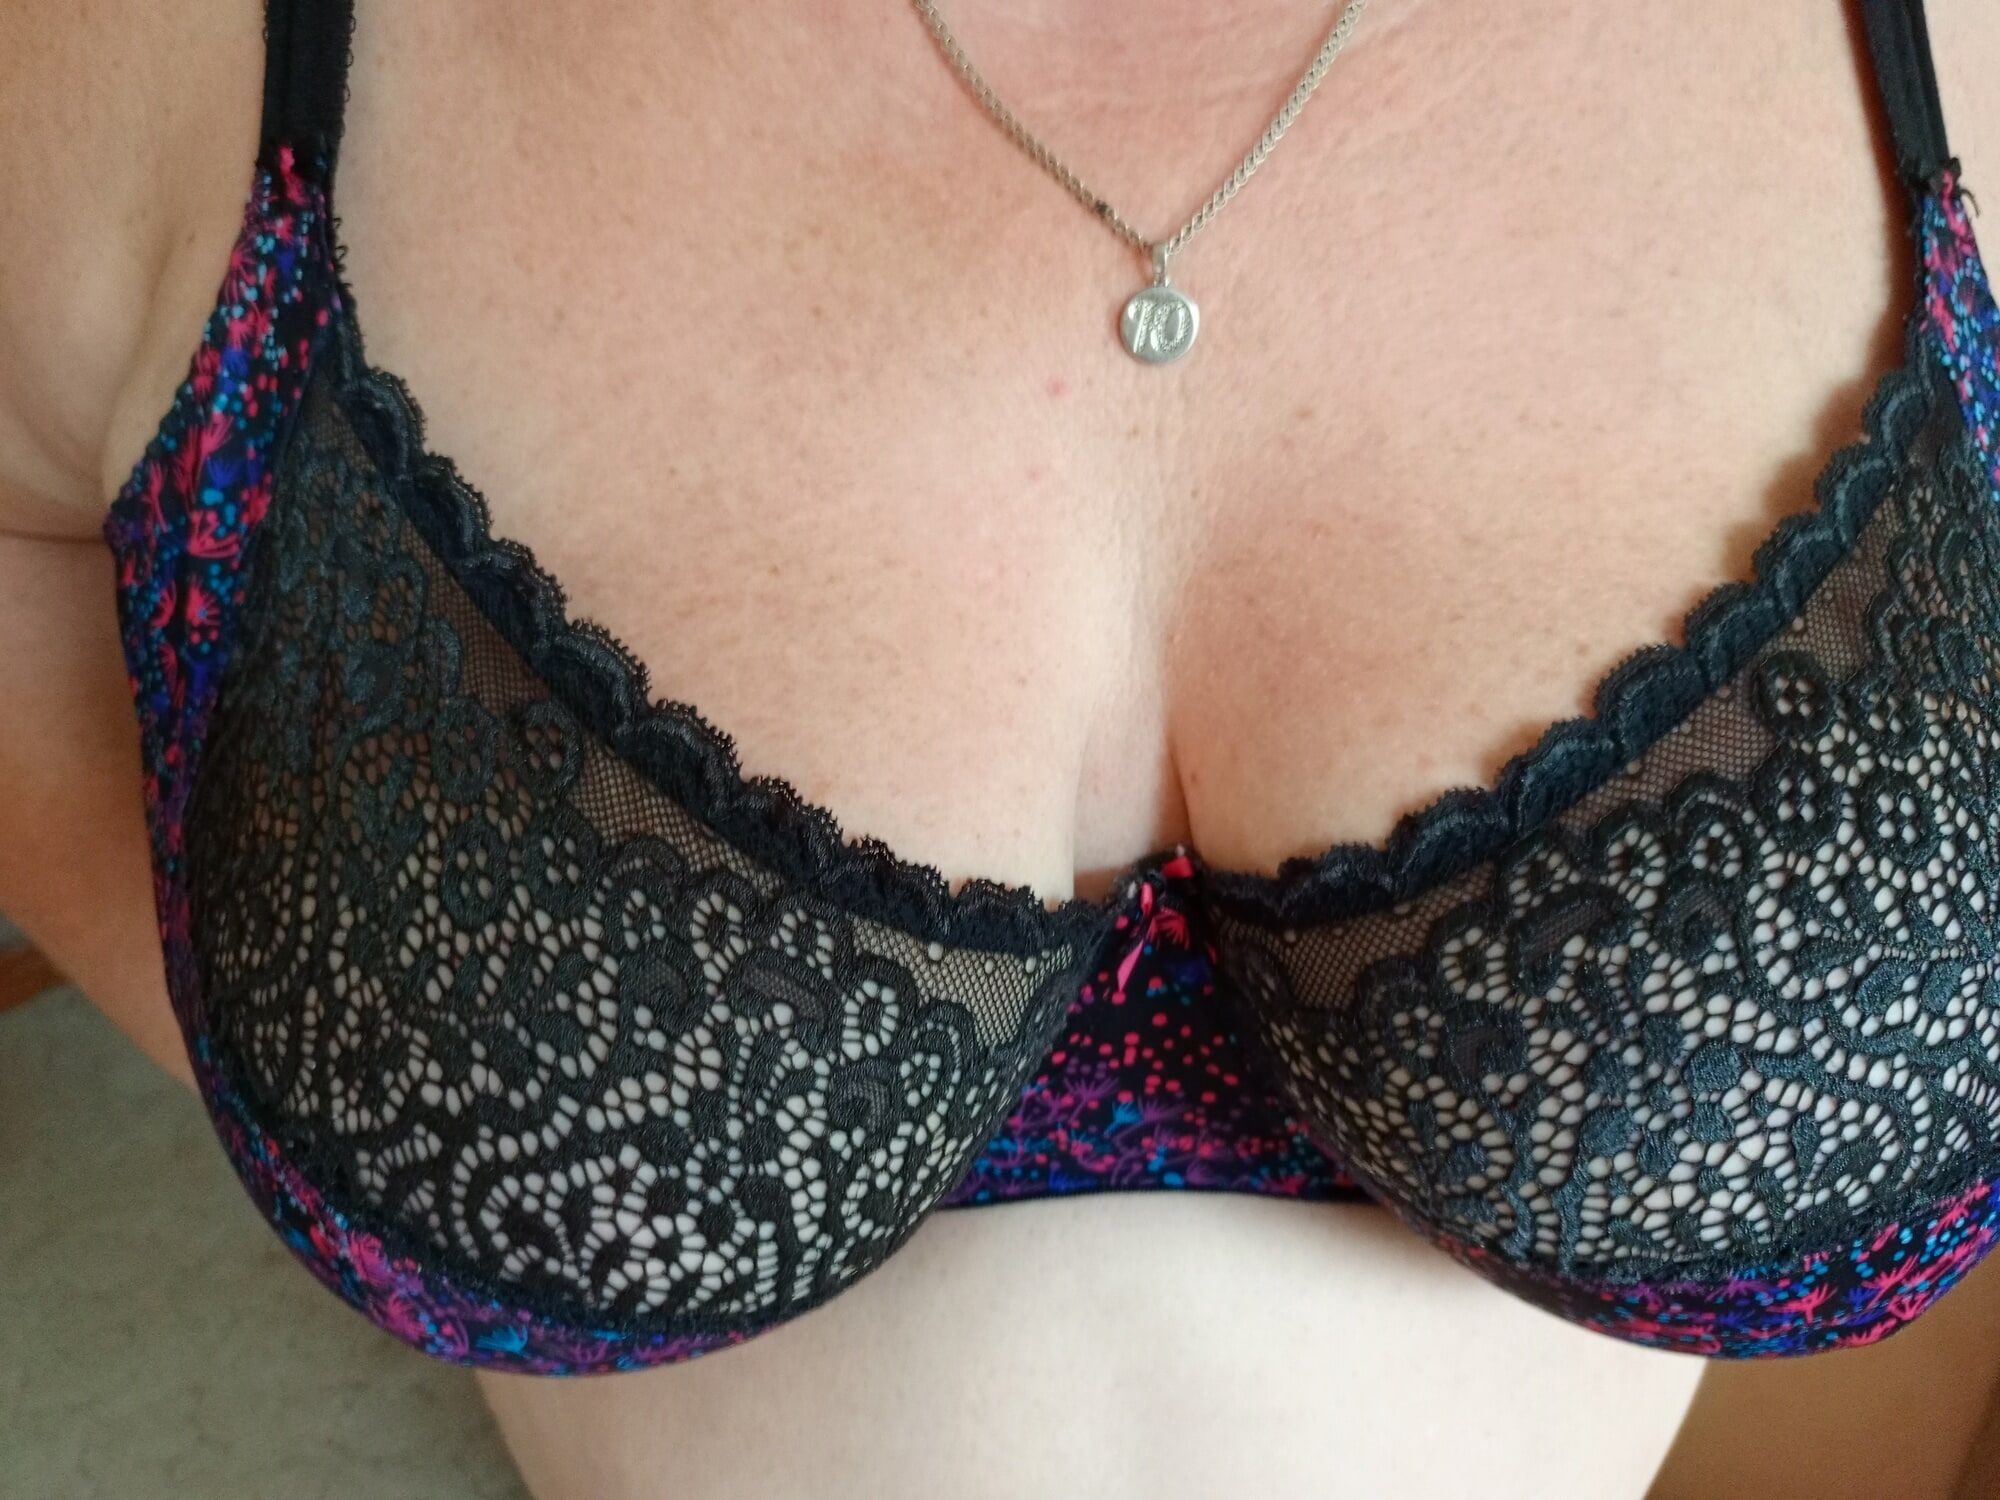 my tits #2